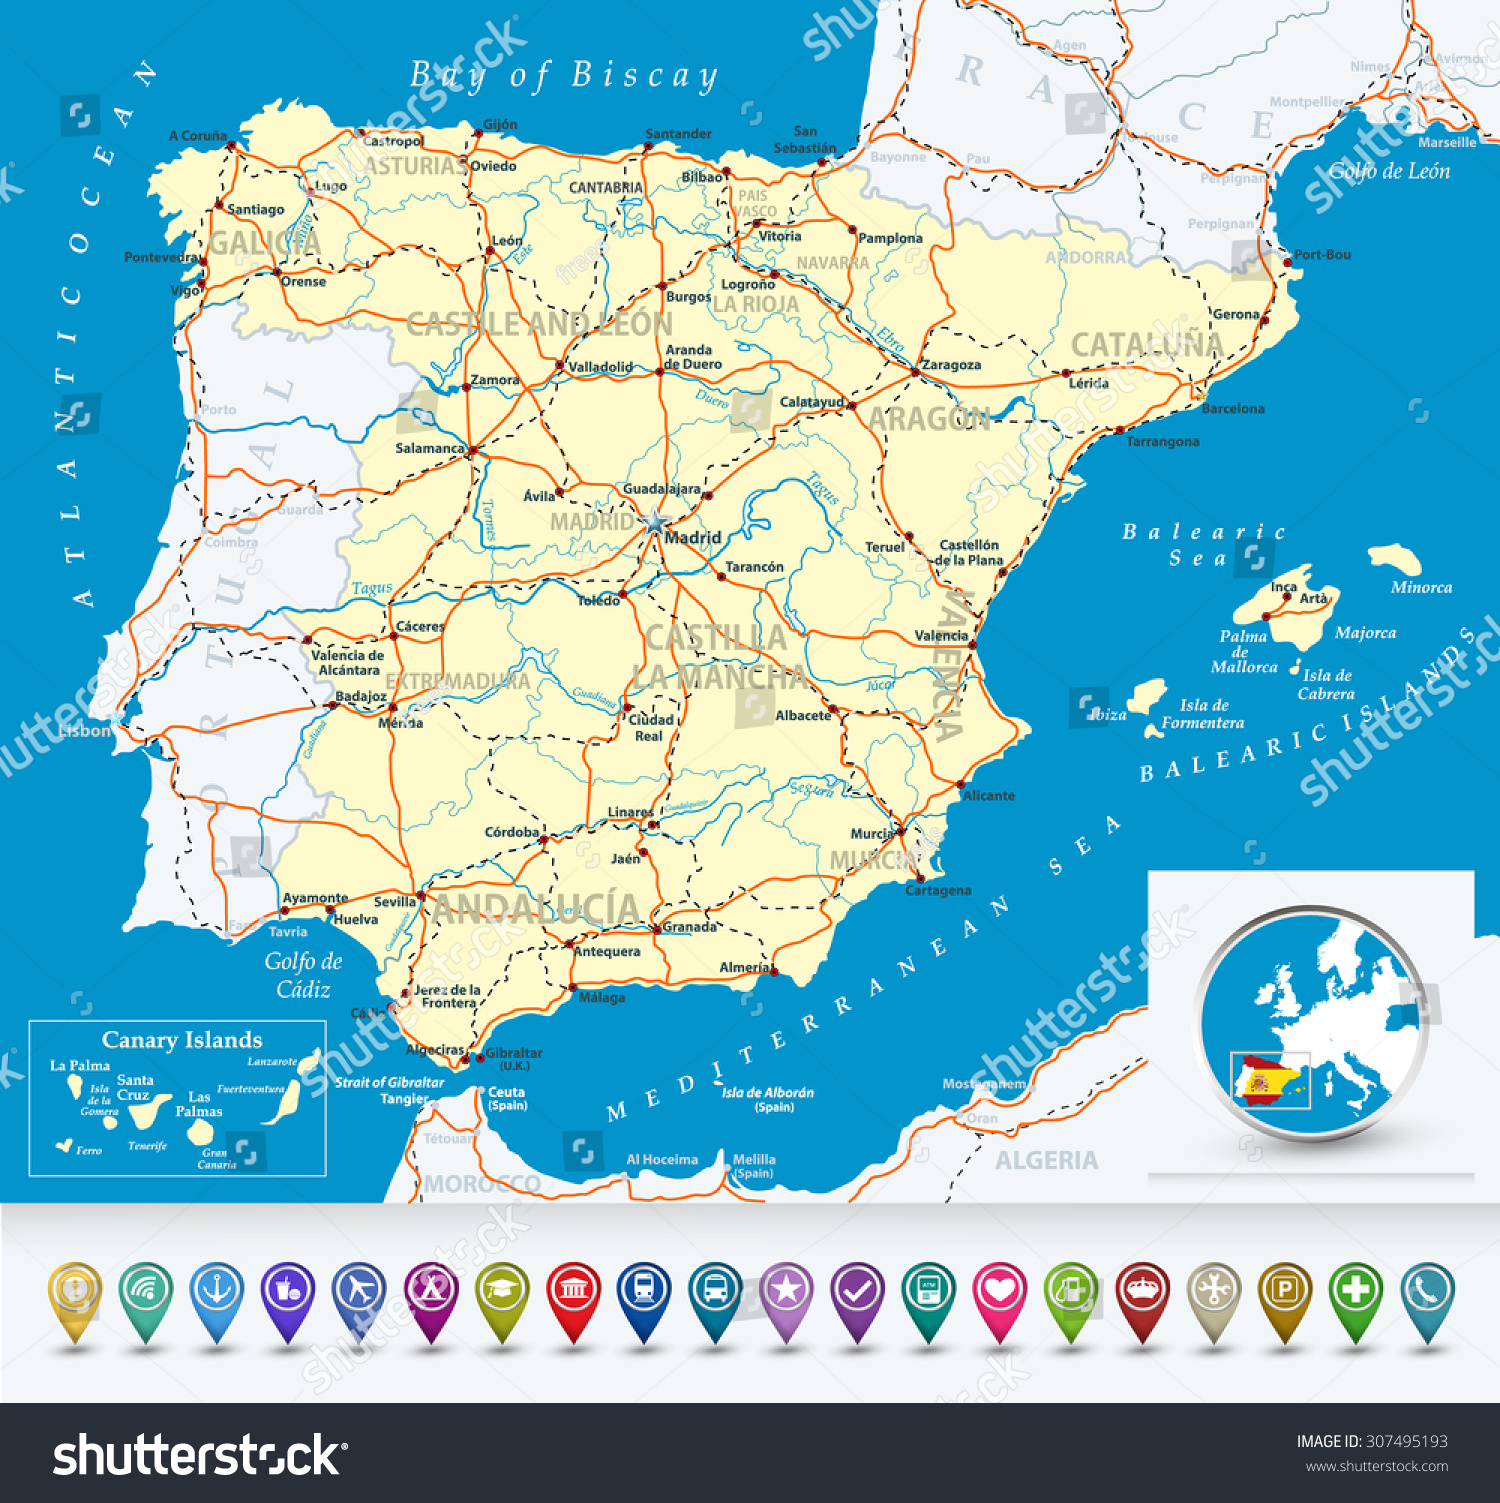 西班牙与泡沫的详细地图图标,公路、铁路、城